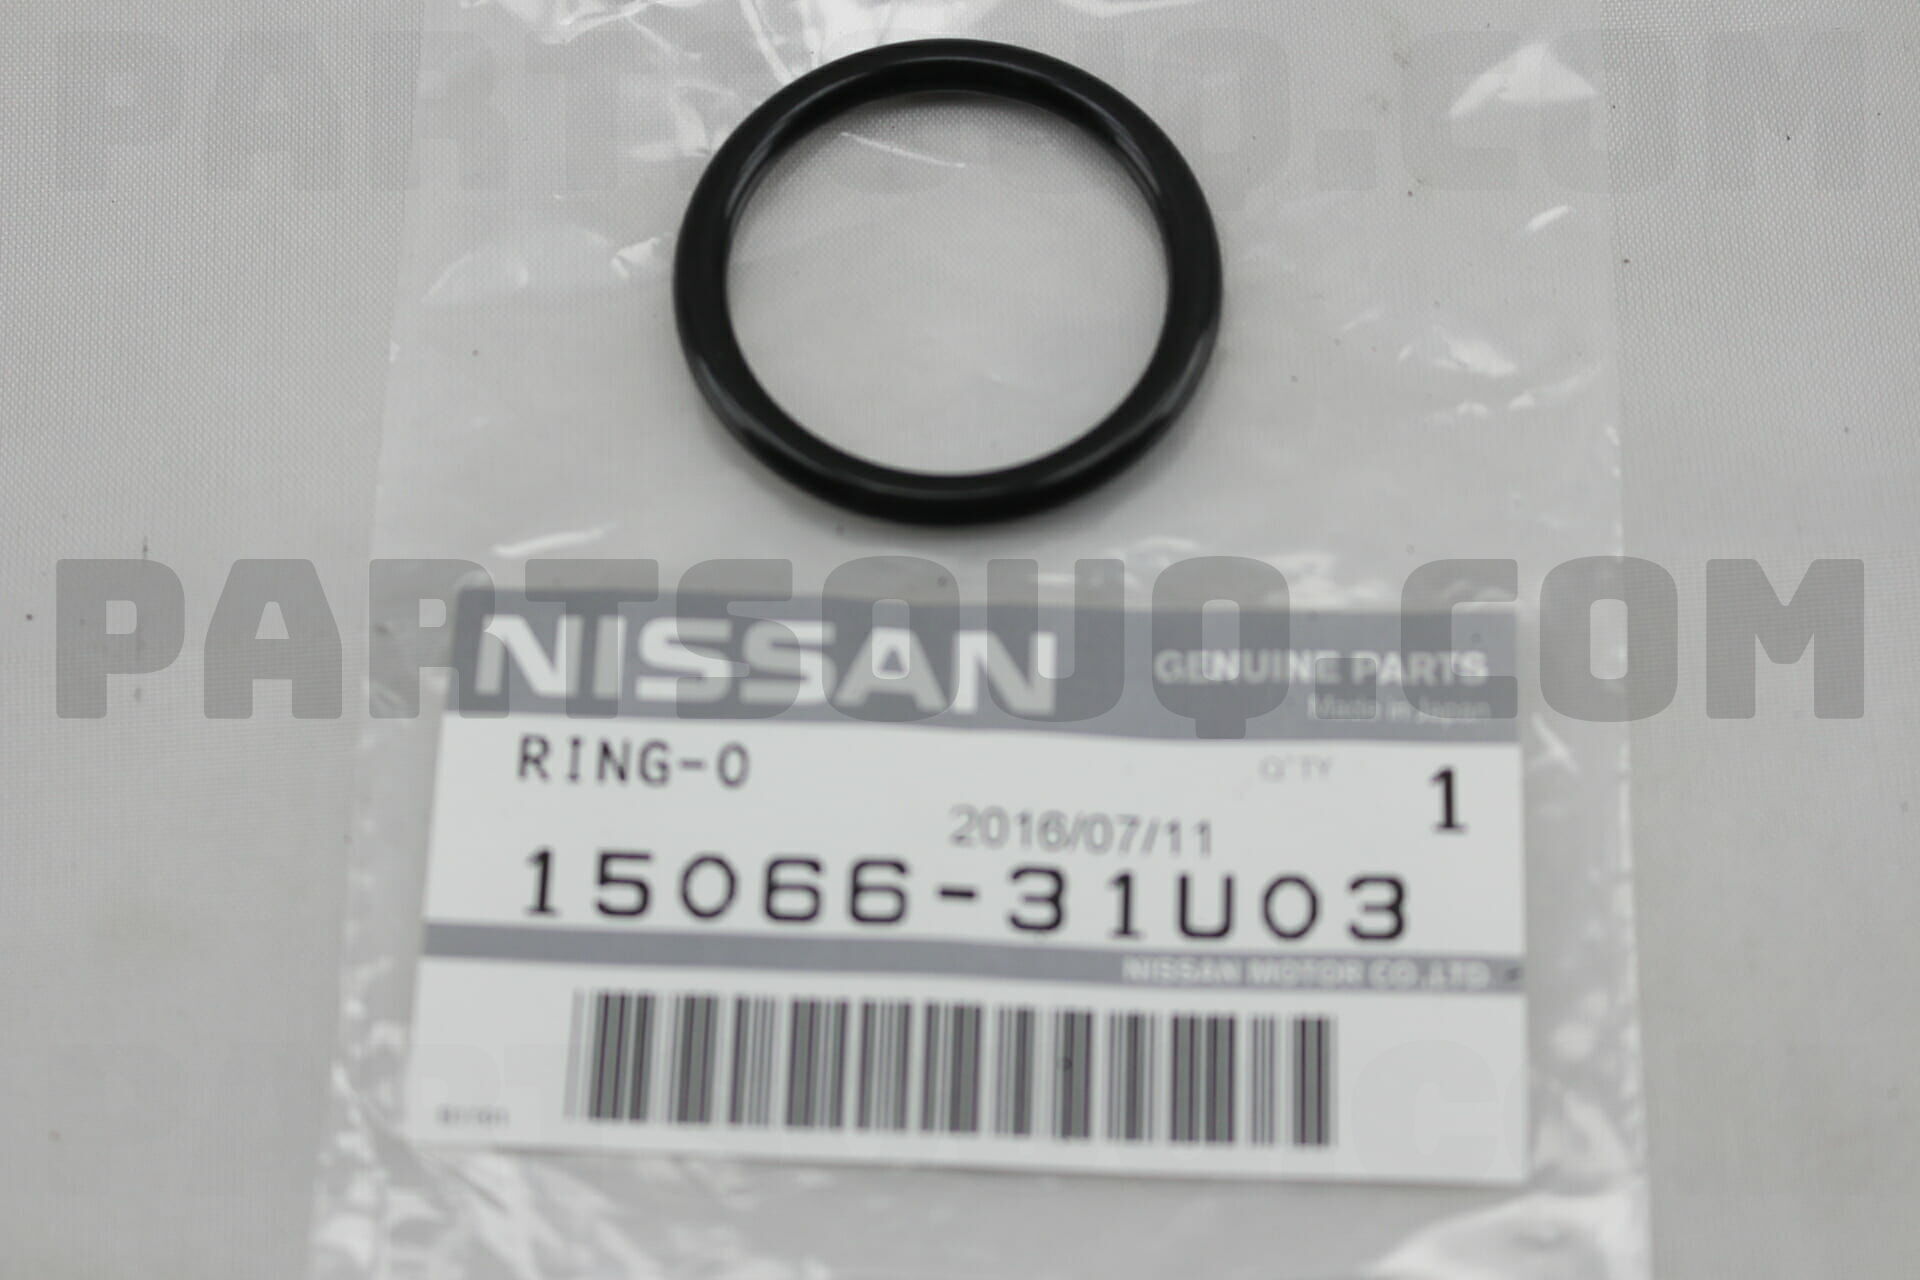 Seal O Ring u03 Nissan Parts Partsouq